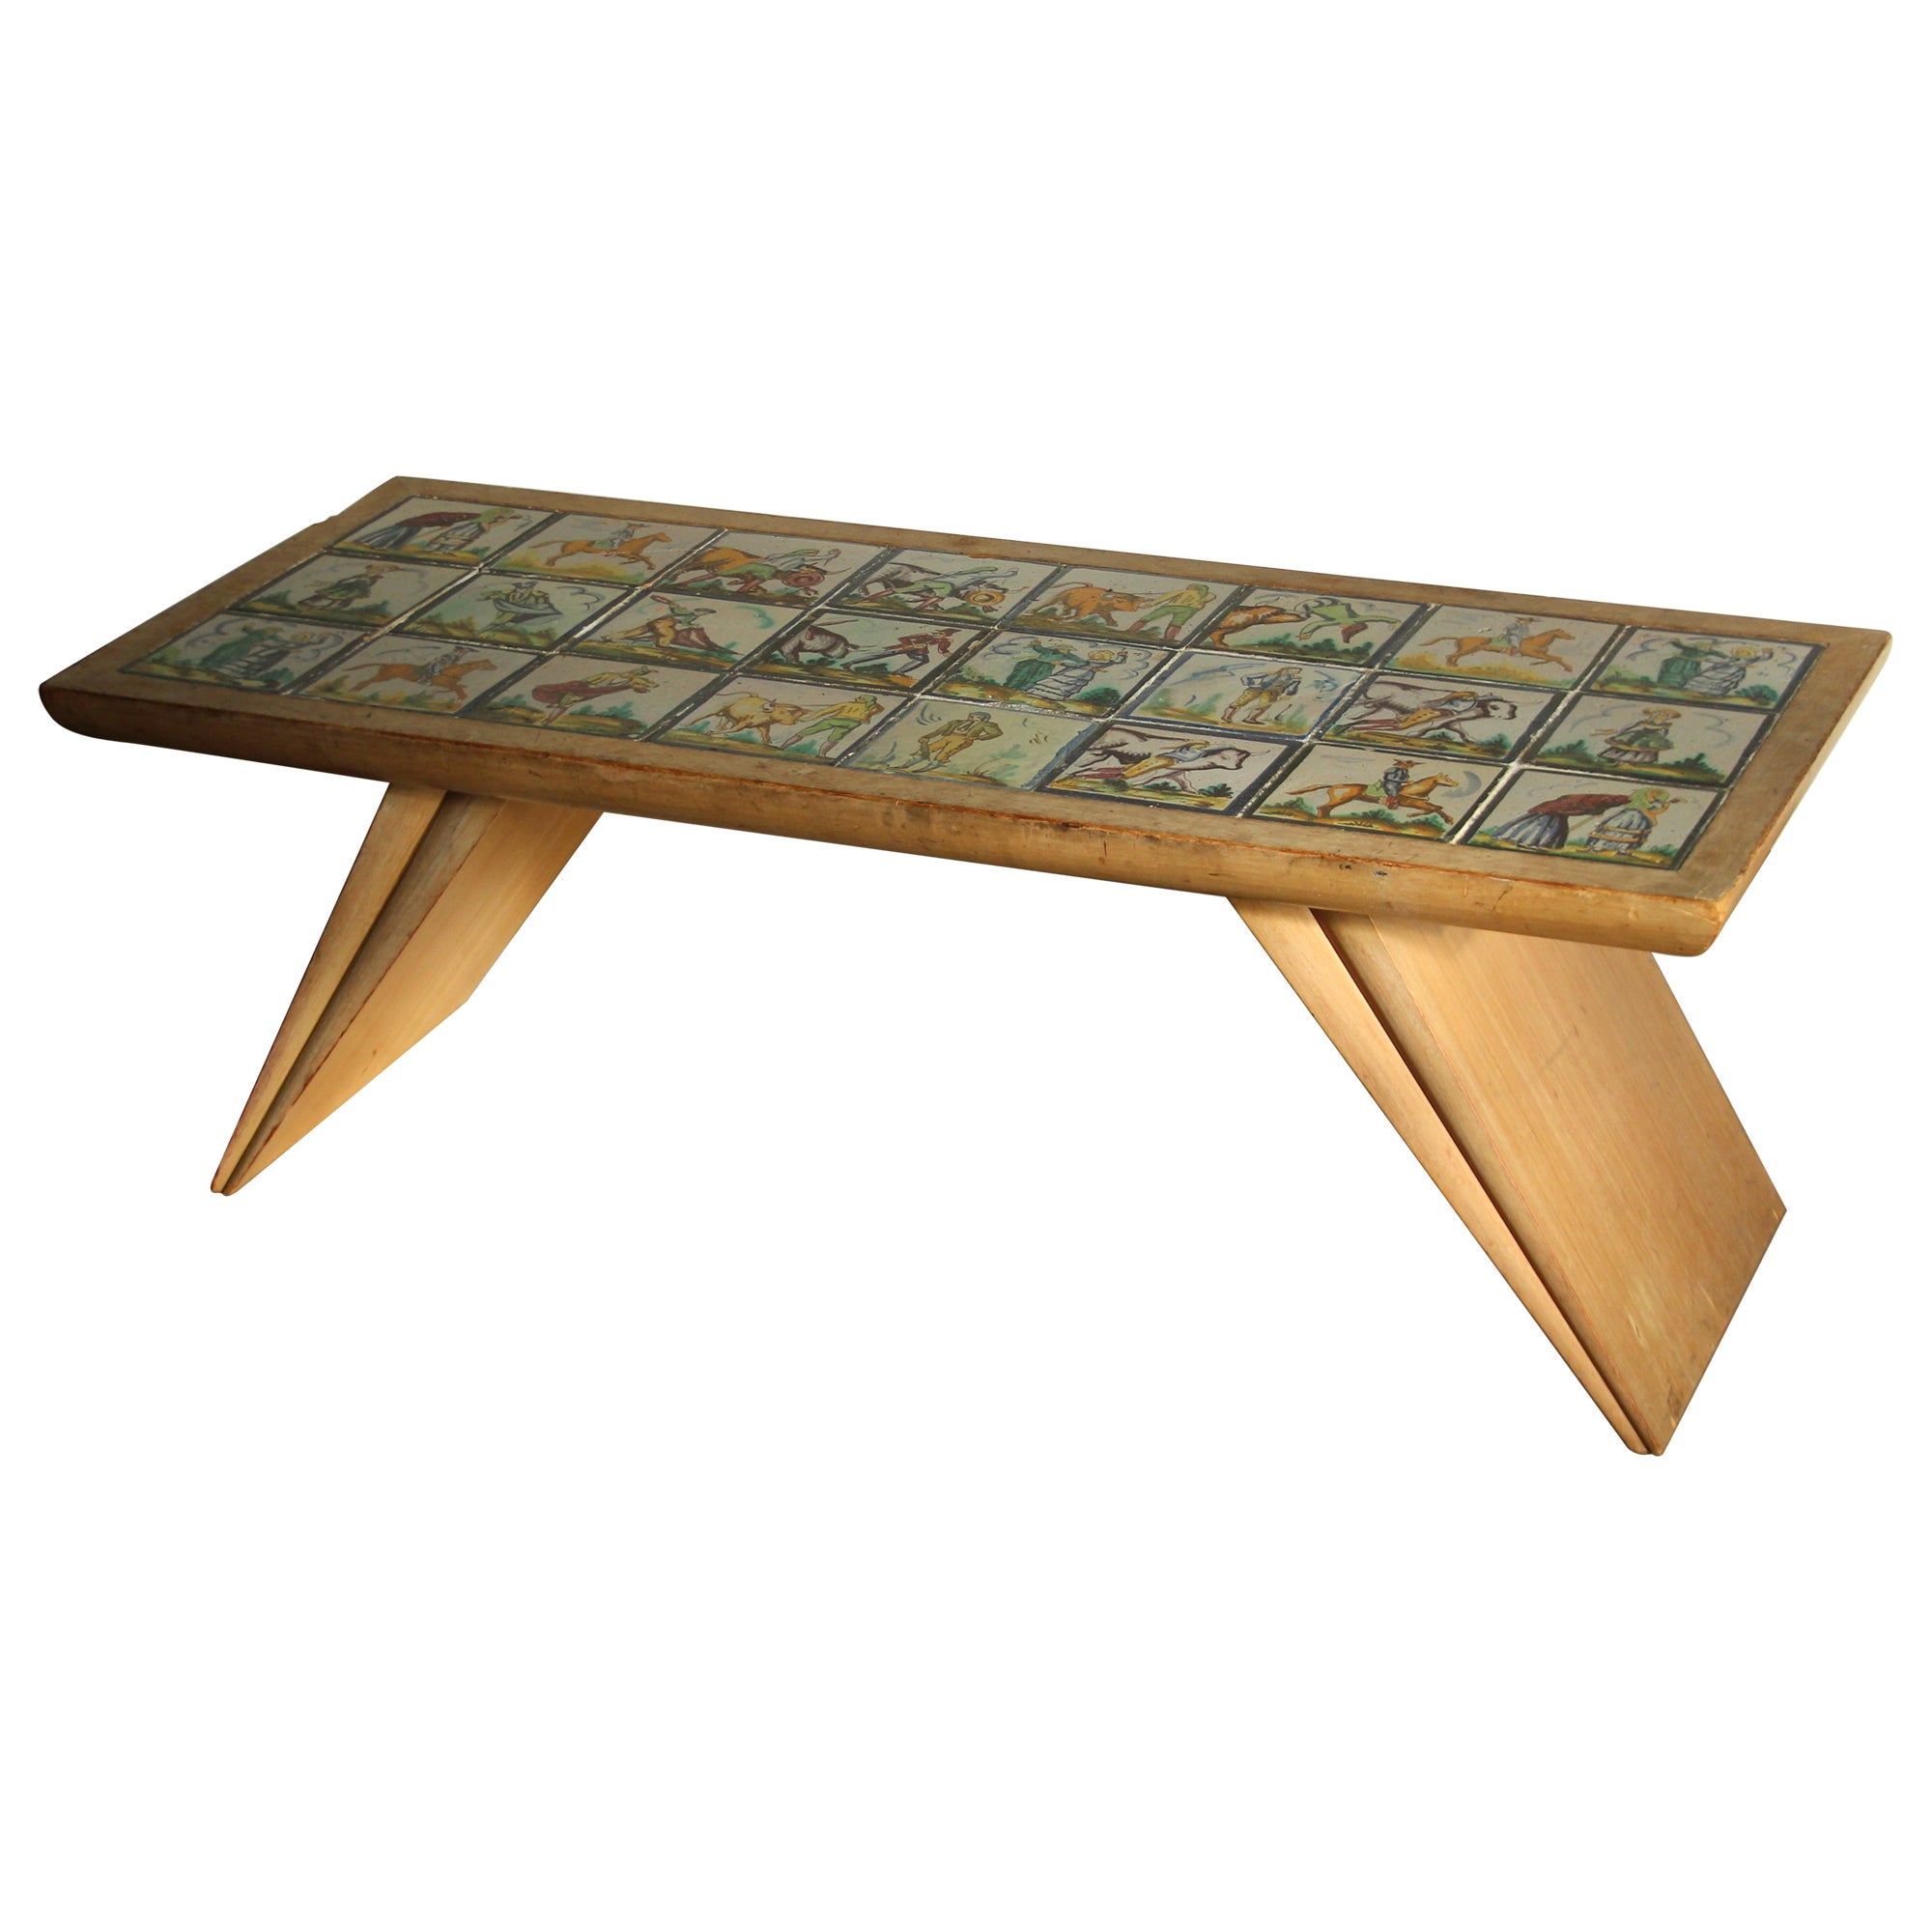 Vladimir Kagan Early and Rare Custom Tile Top Coffee Table, 1940s For Sale